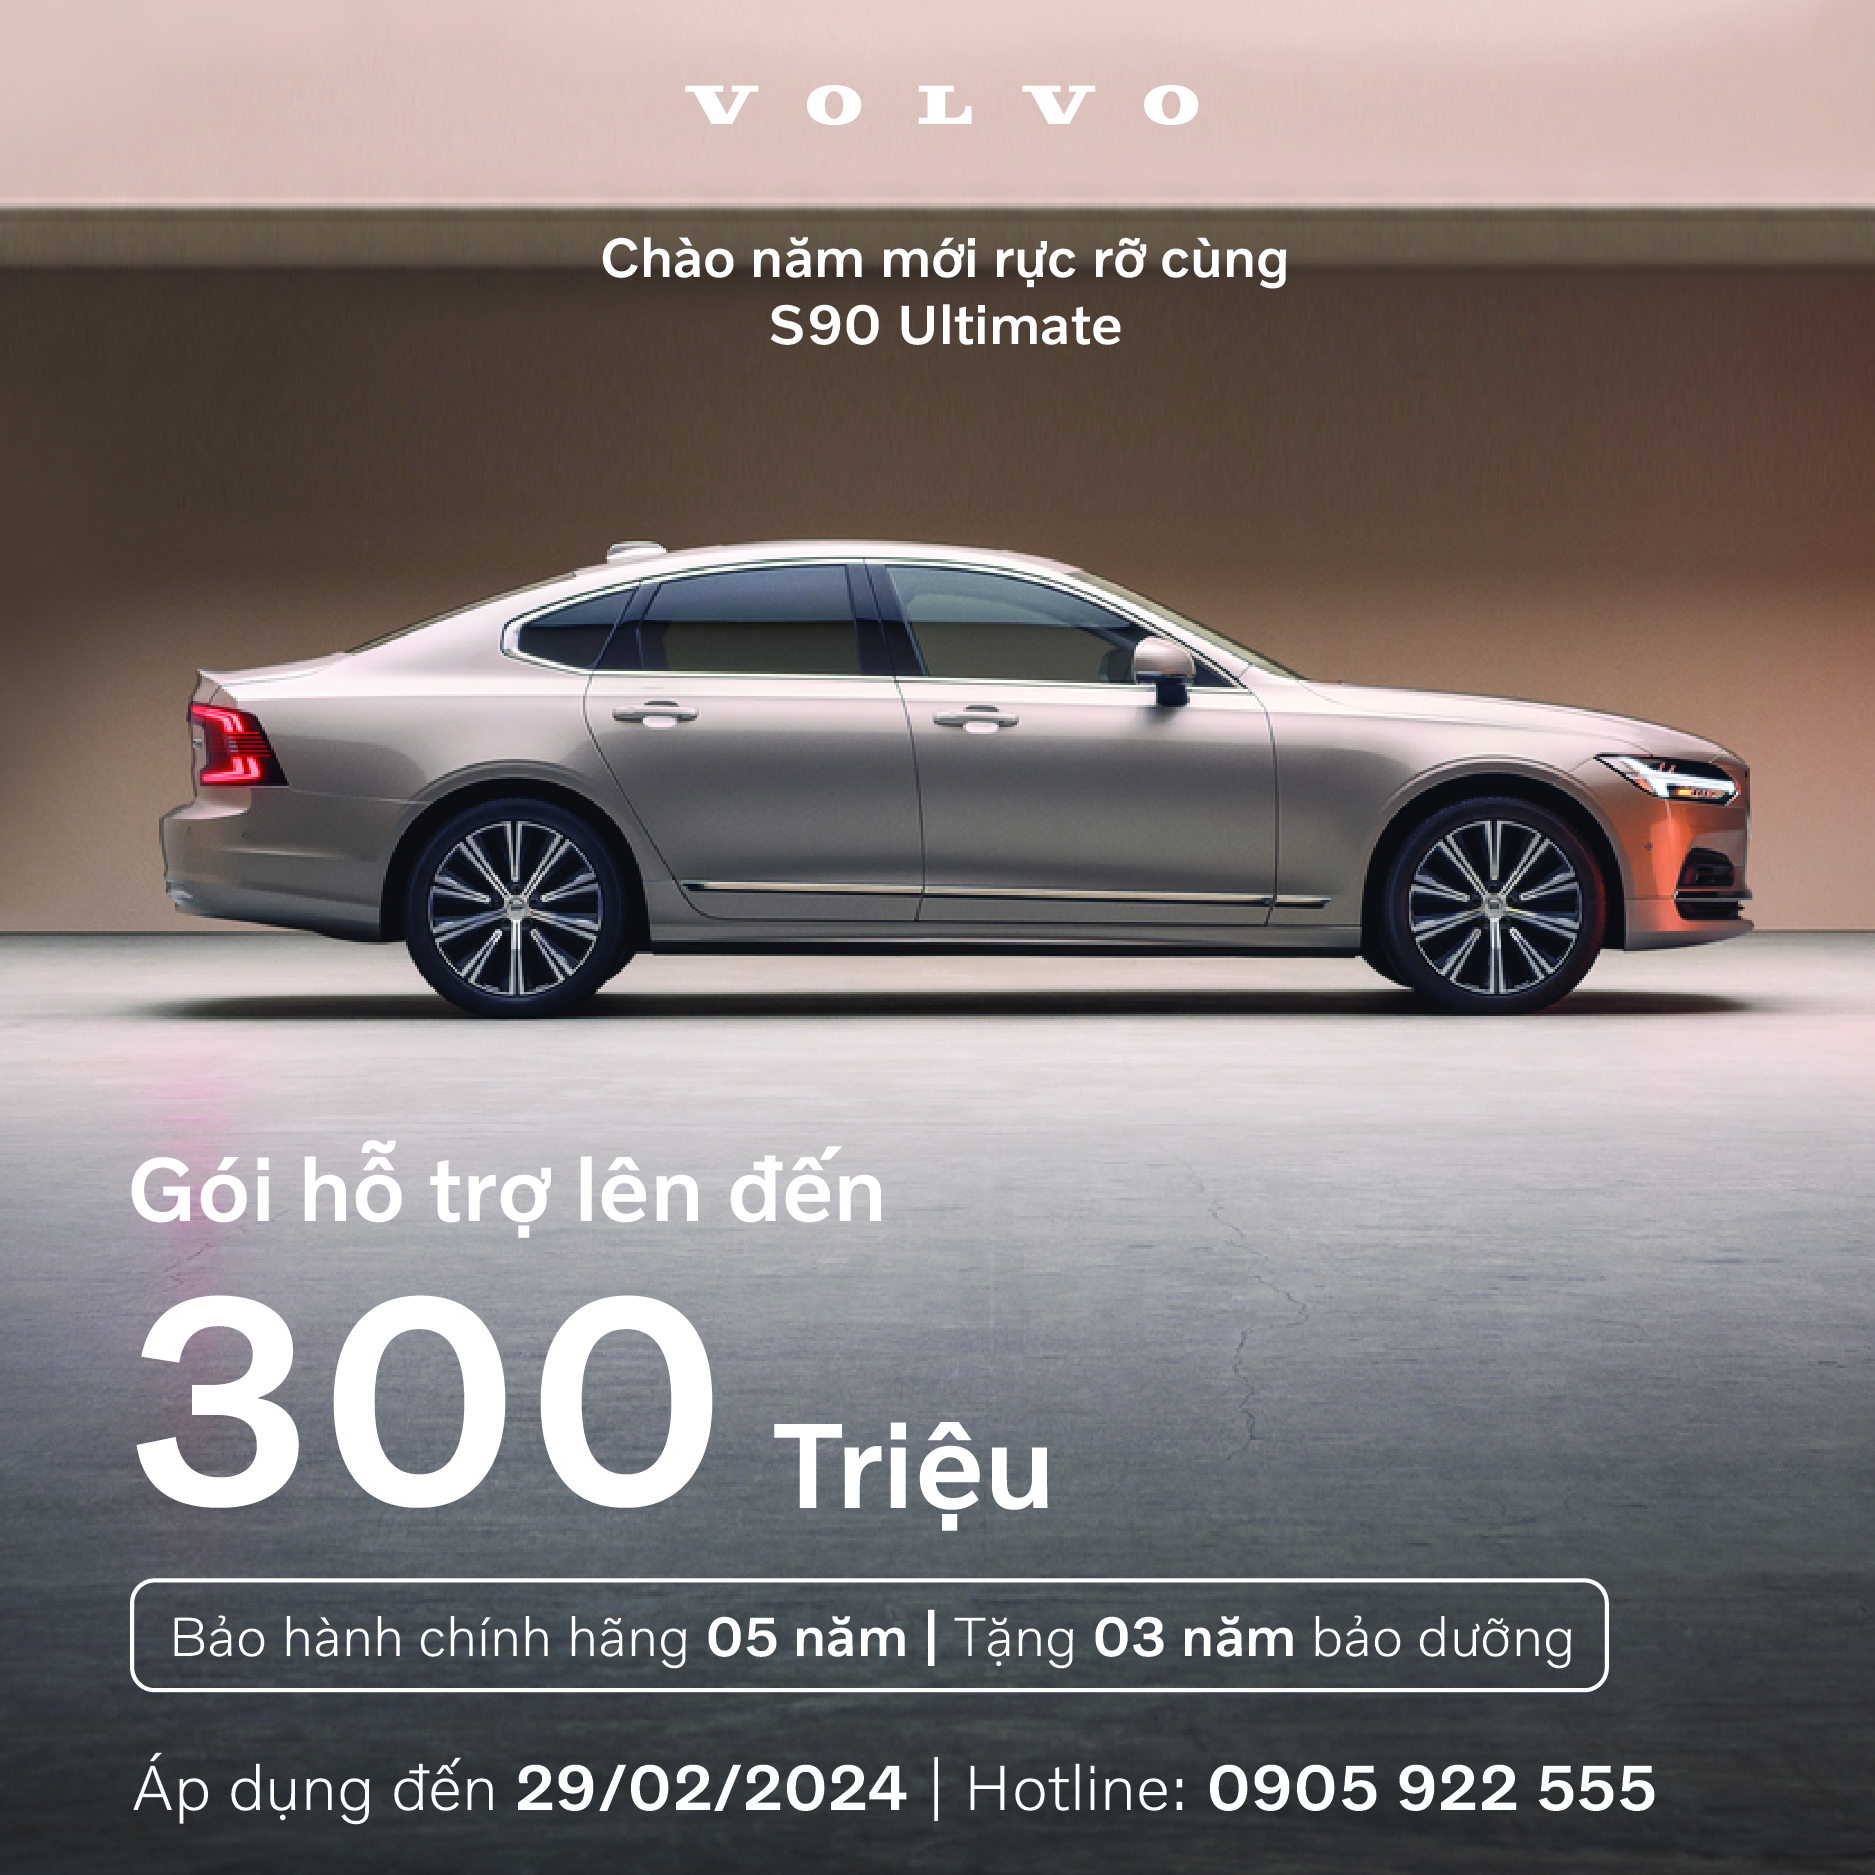 Chương trình ưu đãi tháng 01: “Chào đón năm mới rực rỡ cùng Volvo”